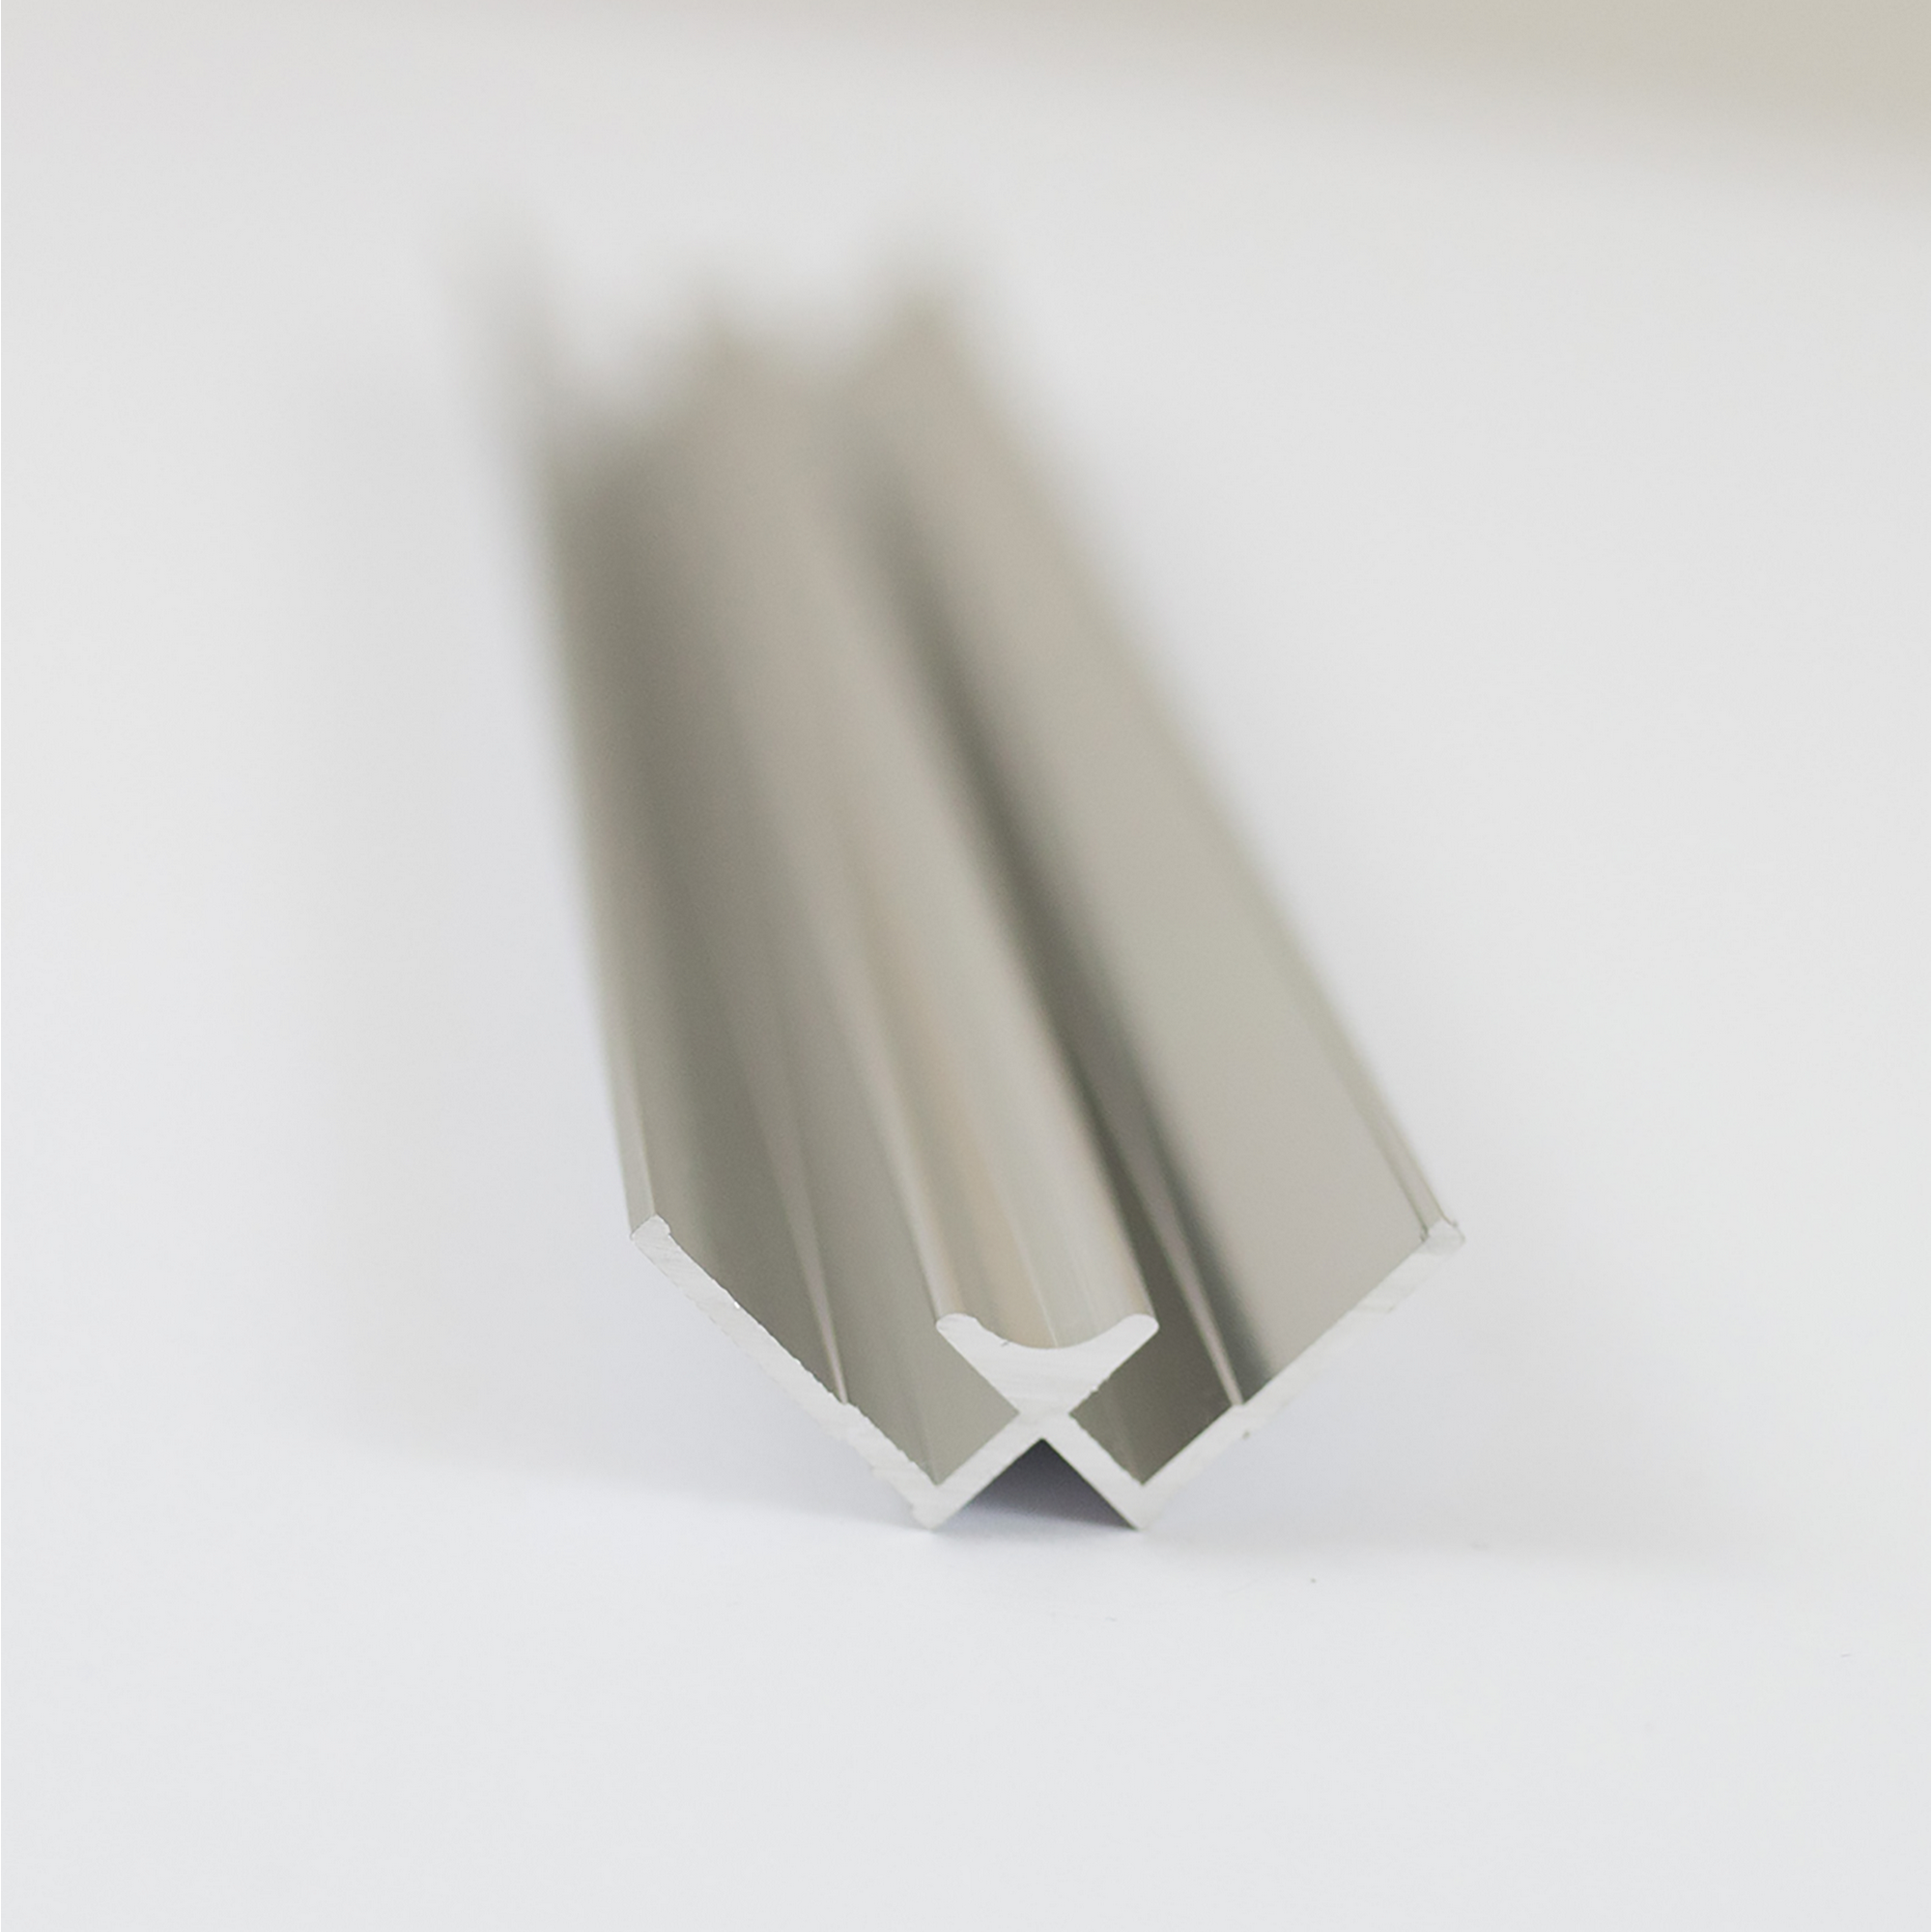 Verbindungsprofil für Rückwandplatten, Ecke innen, alu chromeffekt, 2550 mm + product picture